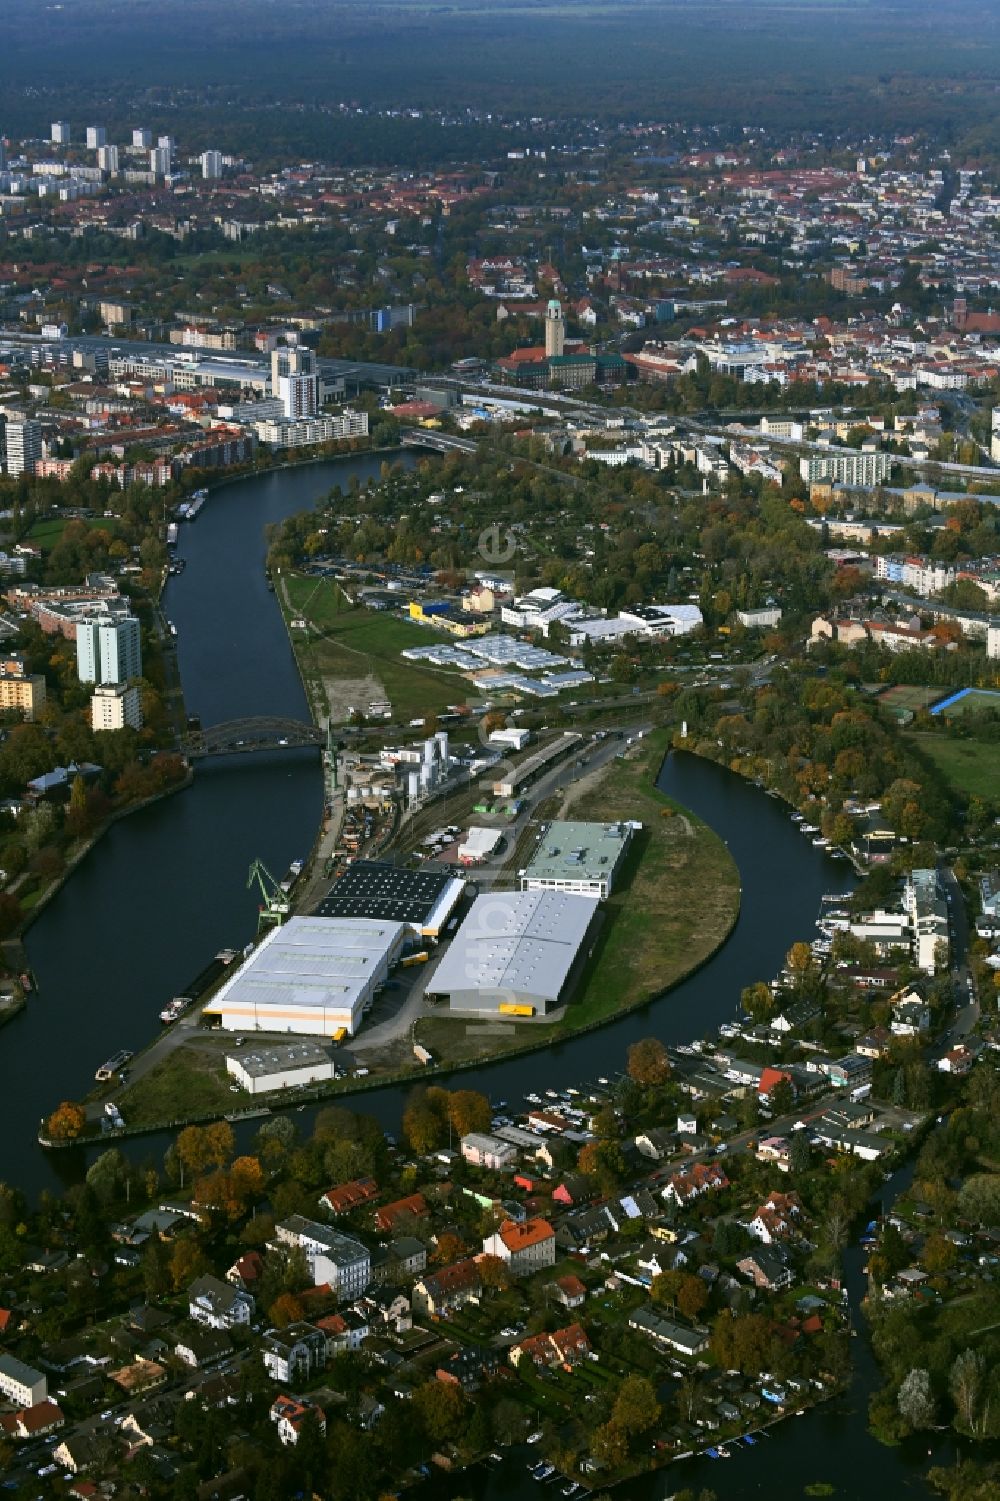 Luftbild Berlin - Binnenhafen Südhafen in Berlin, Deutschland